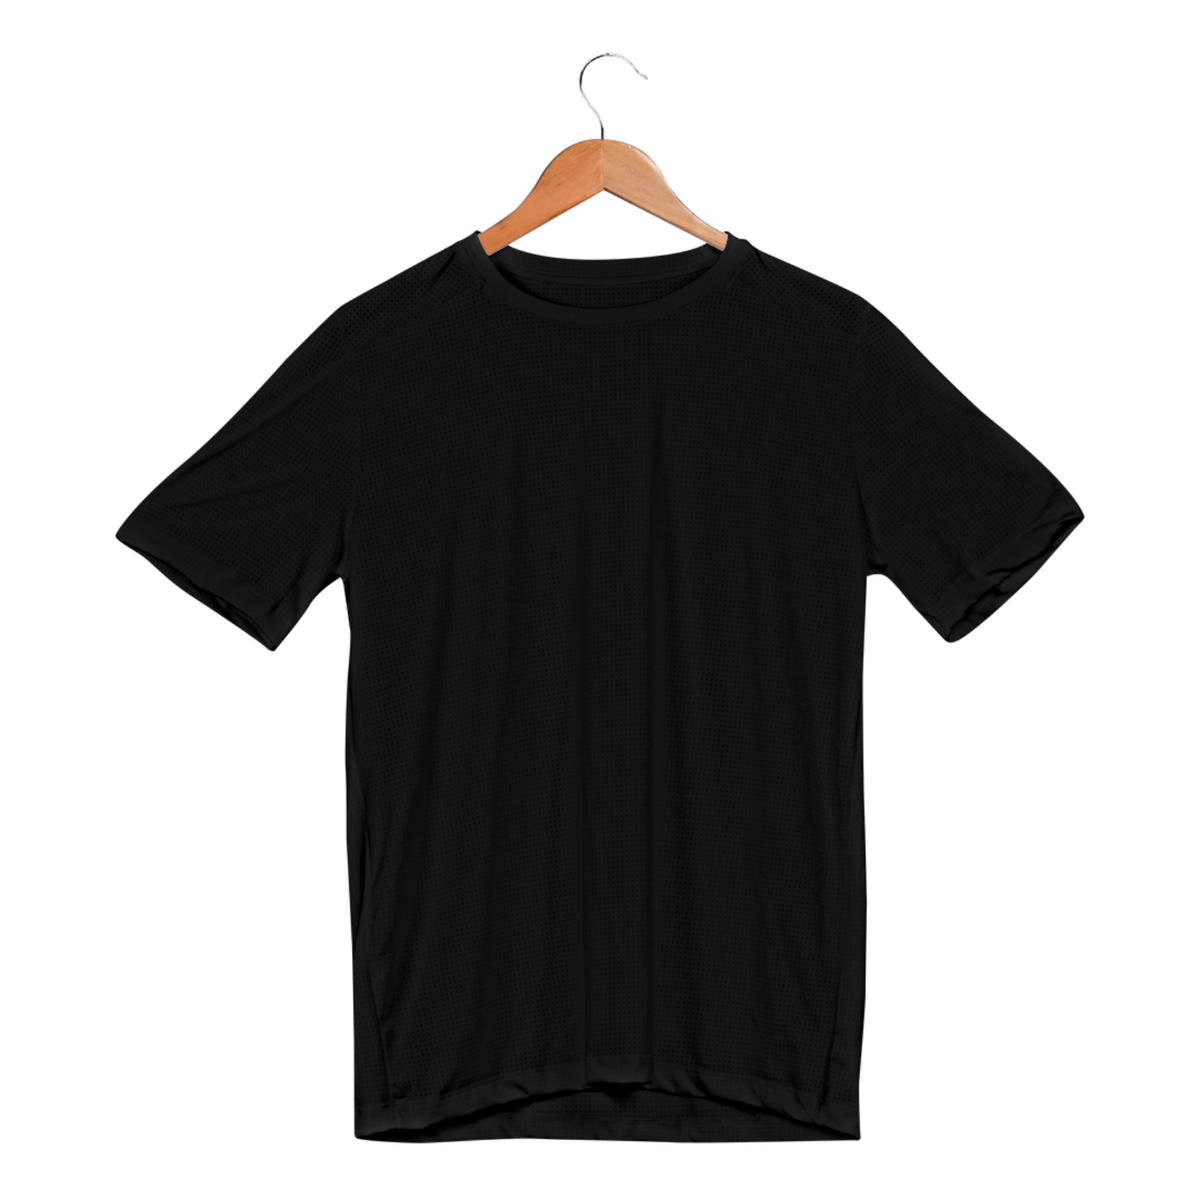 Nome do produto: Camisa Lisa (hi-tech) - AEZpool® Way-Dry (Não Precisa Passar) #b240418h2